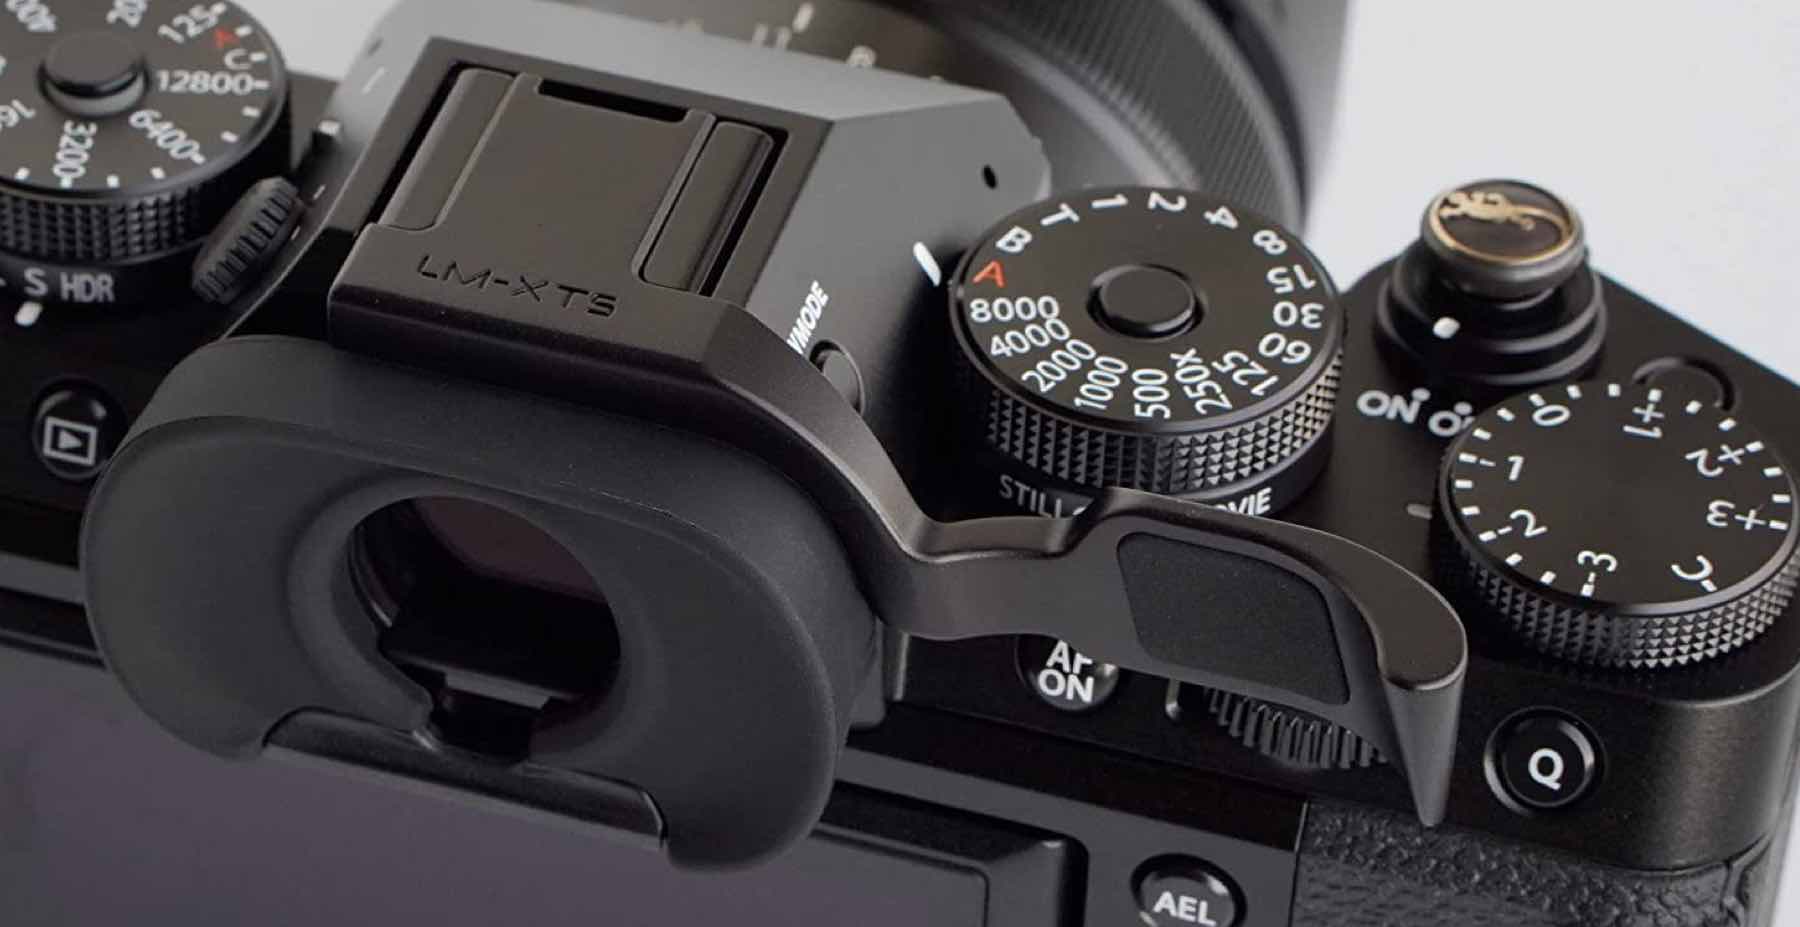 Lensmate Thumb Grip for Fujifilm X-T5 - Fuji Rumors